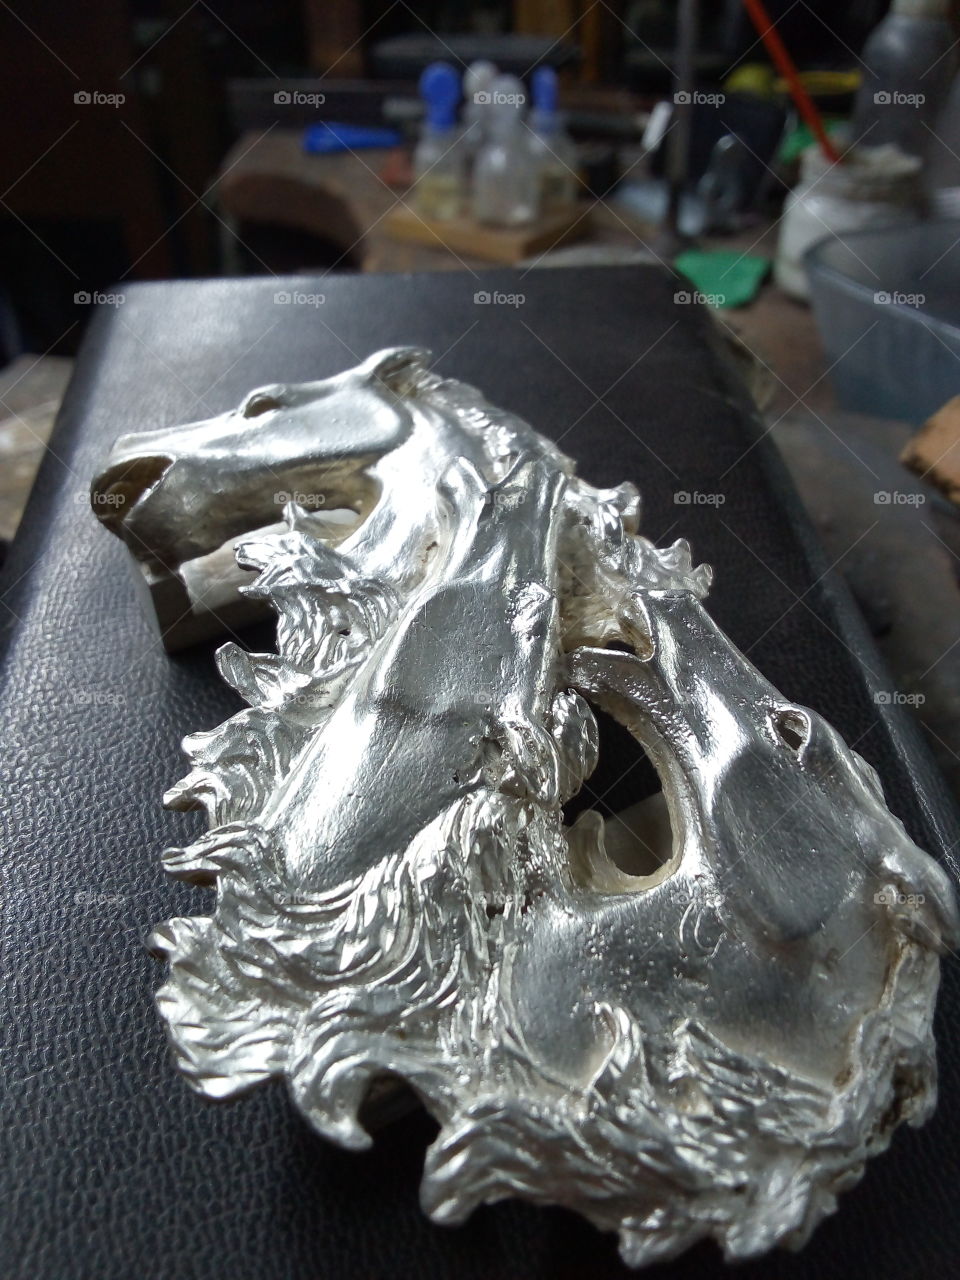 caballos hechos de plata ley, se muestra la cabeza de tres caballos en metal plata.